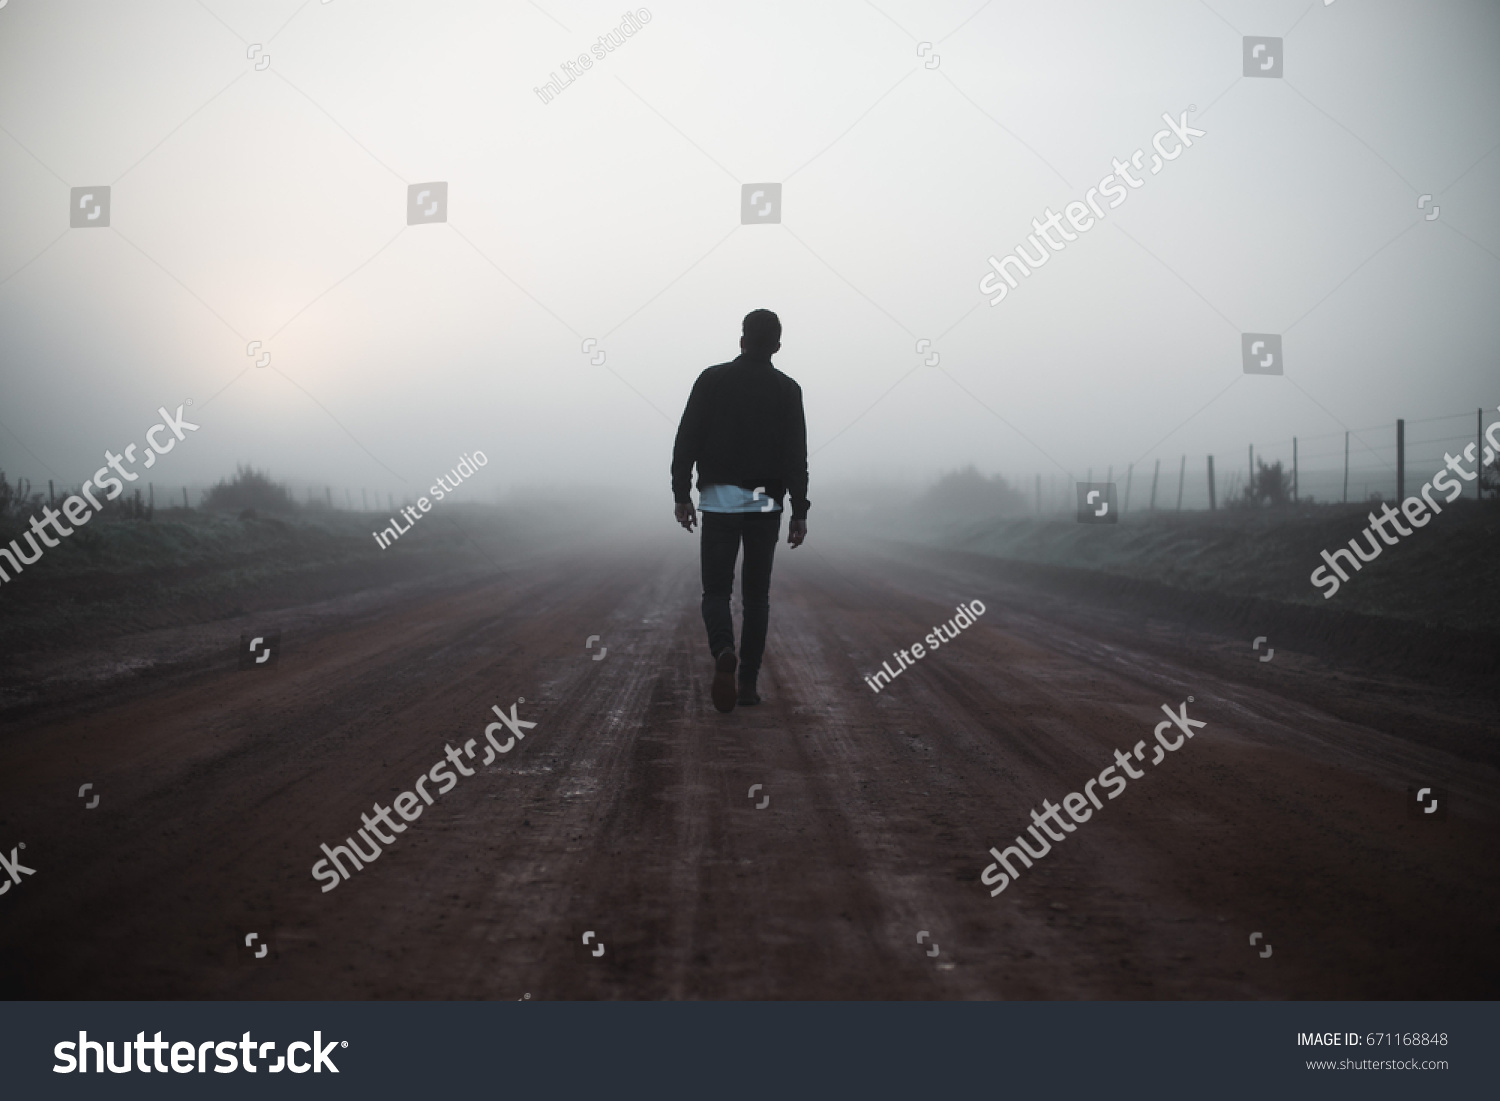 Man walking away on misty road #671168848